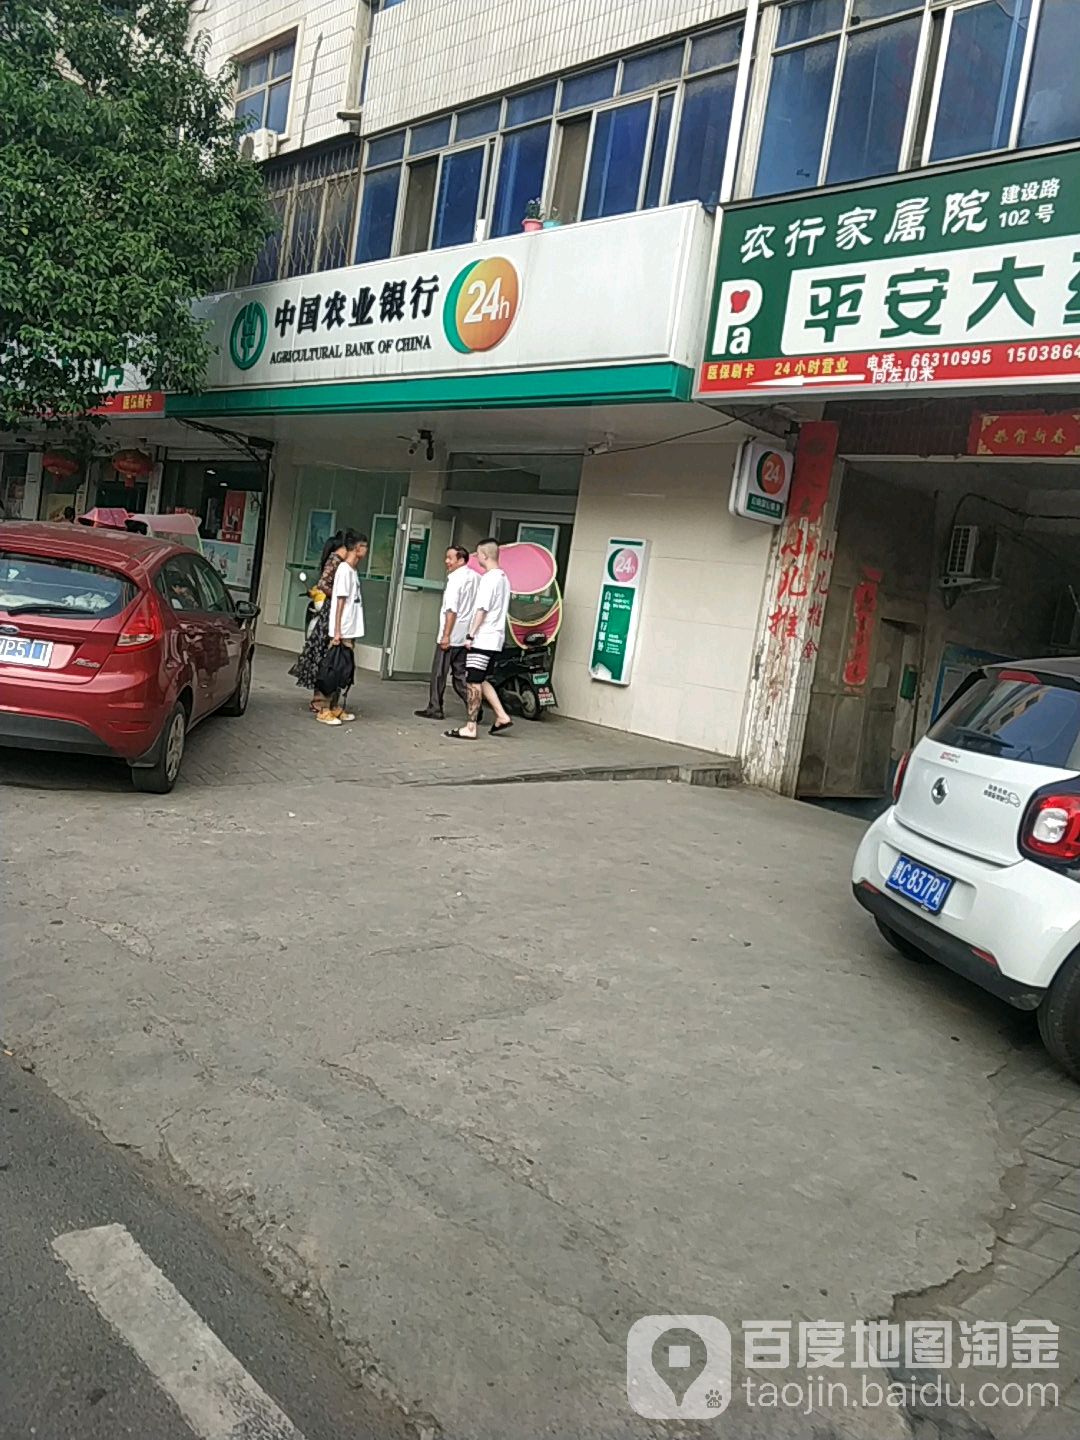 中國農業銀行24小時自助銀行服務(建設路店)